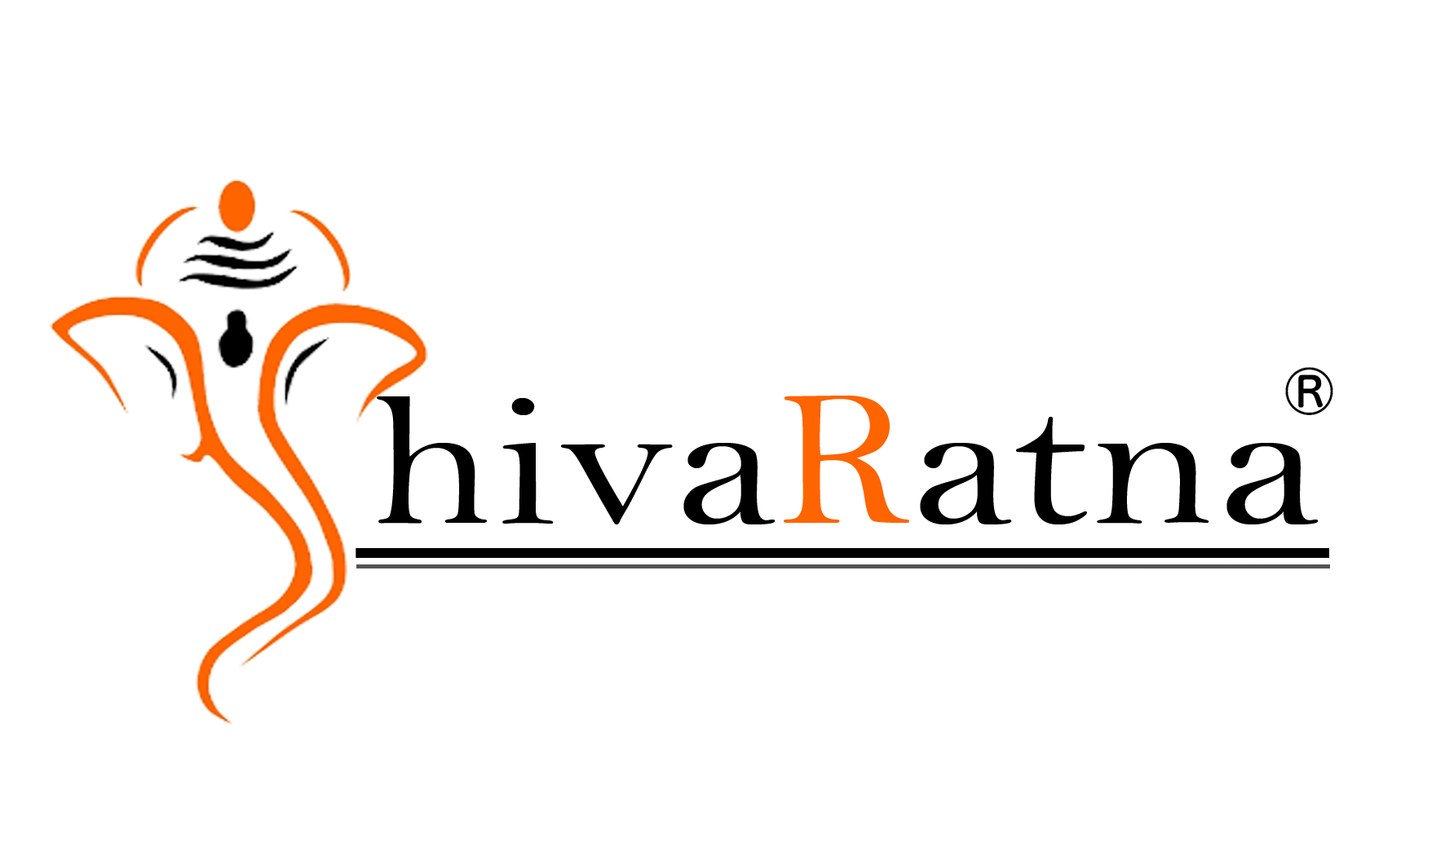 ShivaRatna 1 mukhi rudraksha bracelet - ShivaRatna